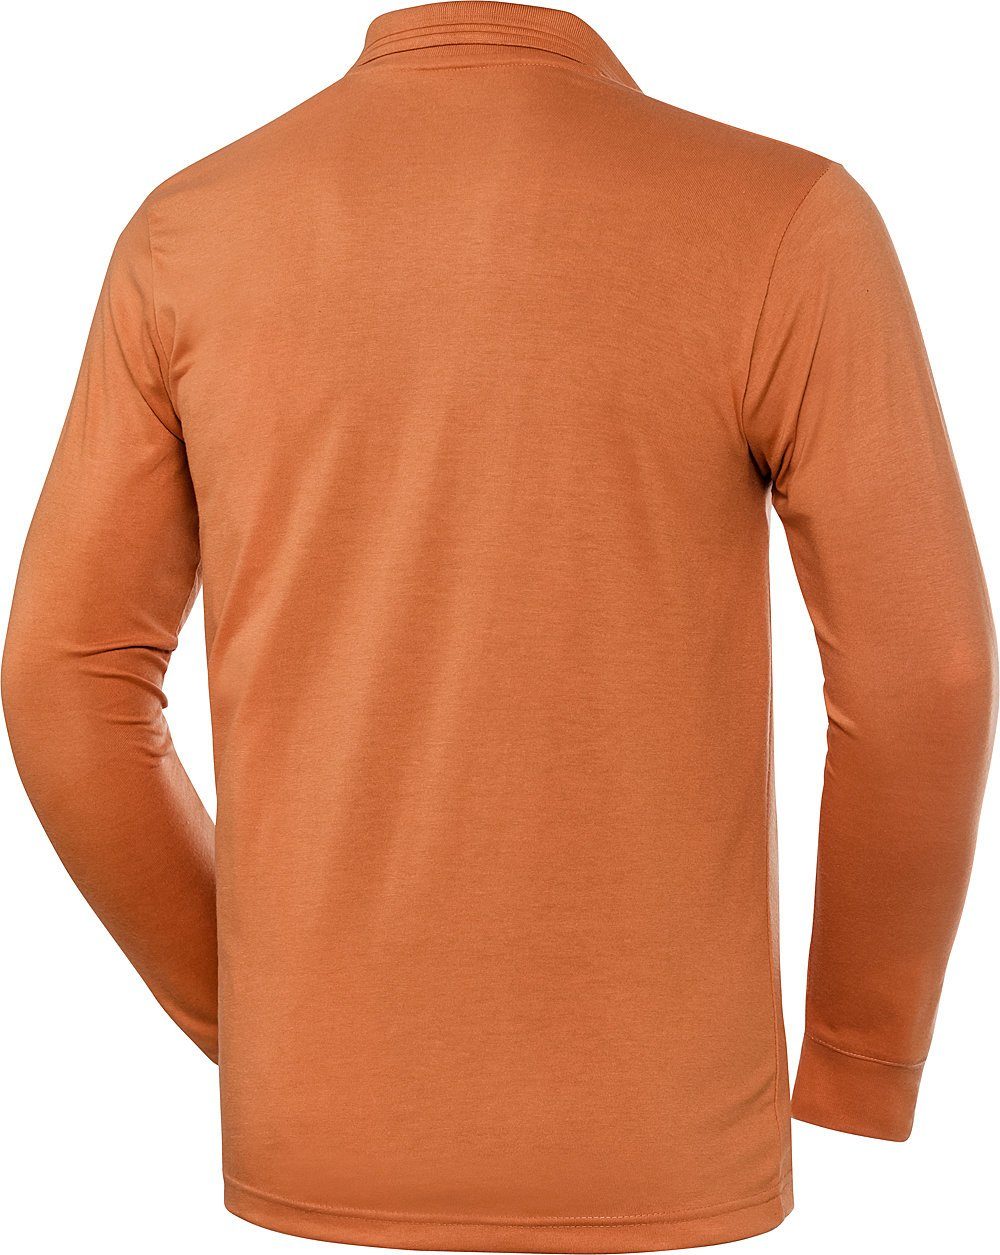 superweiches Jersey-Gewebe Langarm-Poloshirt HENSON&HENSON orange